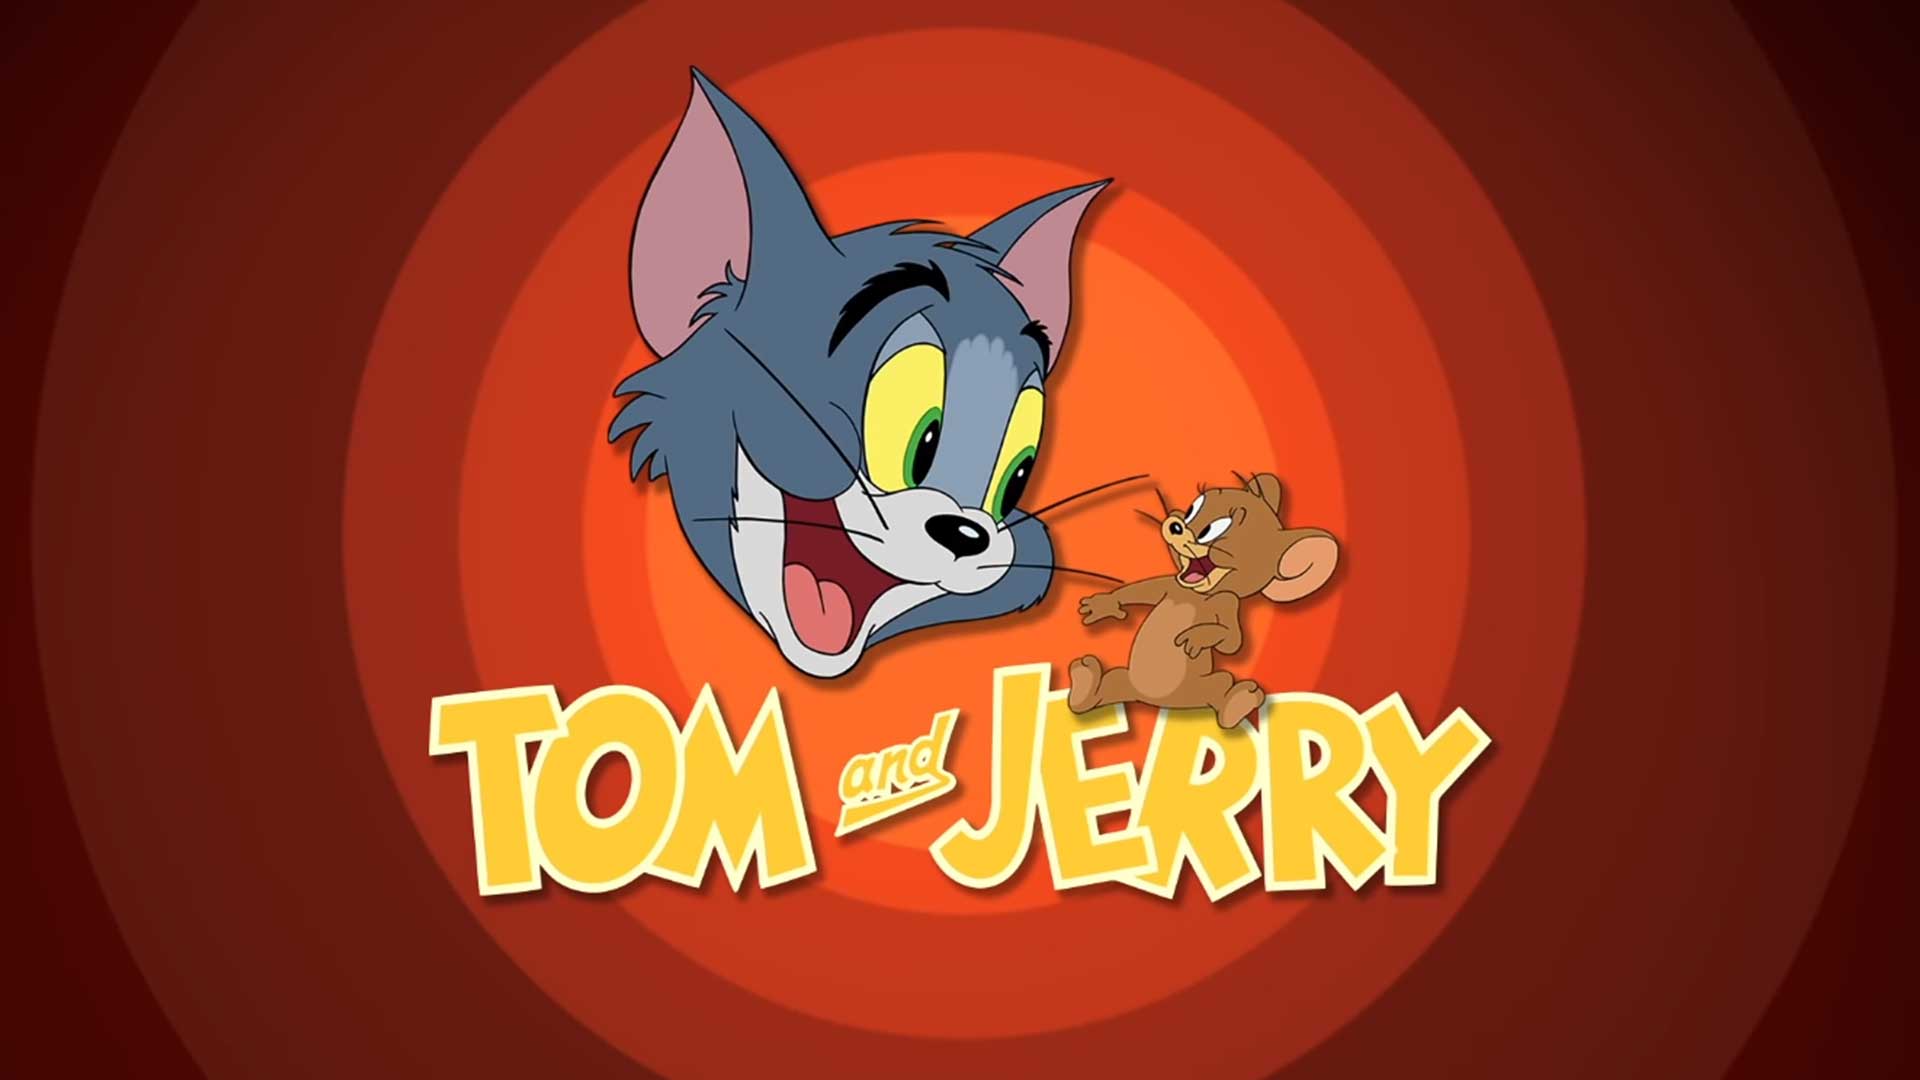 Том и Джерри – 15 серия «Телохранитель» / Tom and Jerry